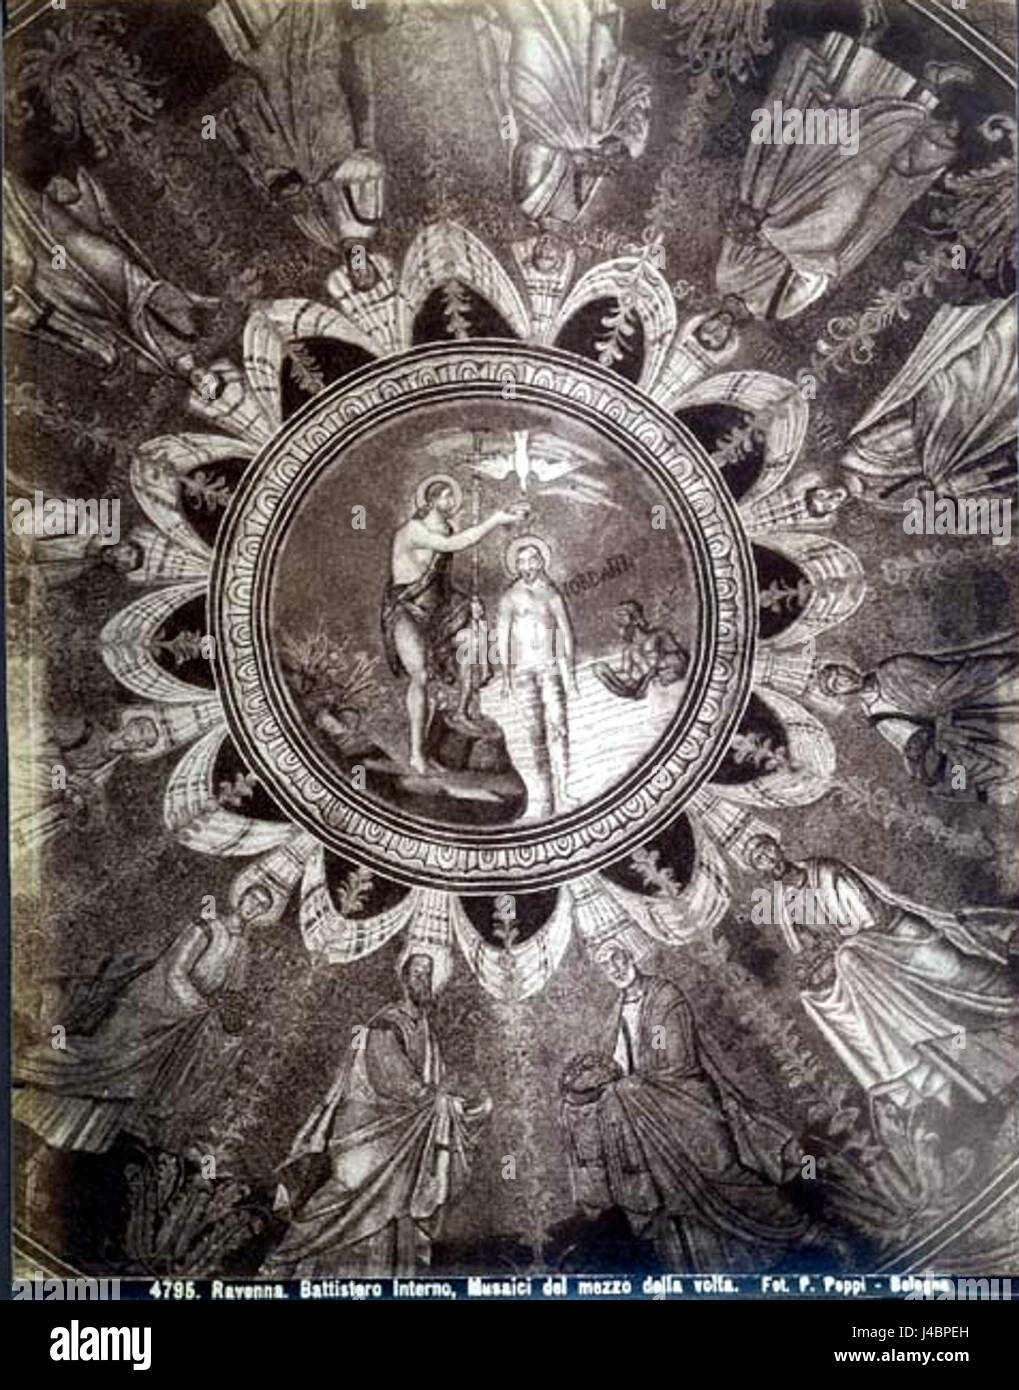 Poppi, Pietro (1833 1914)   n. 4795   Ravenna   Battistero   Interno   Musaici del mezzo della volta Stock Photo